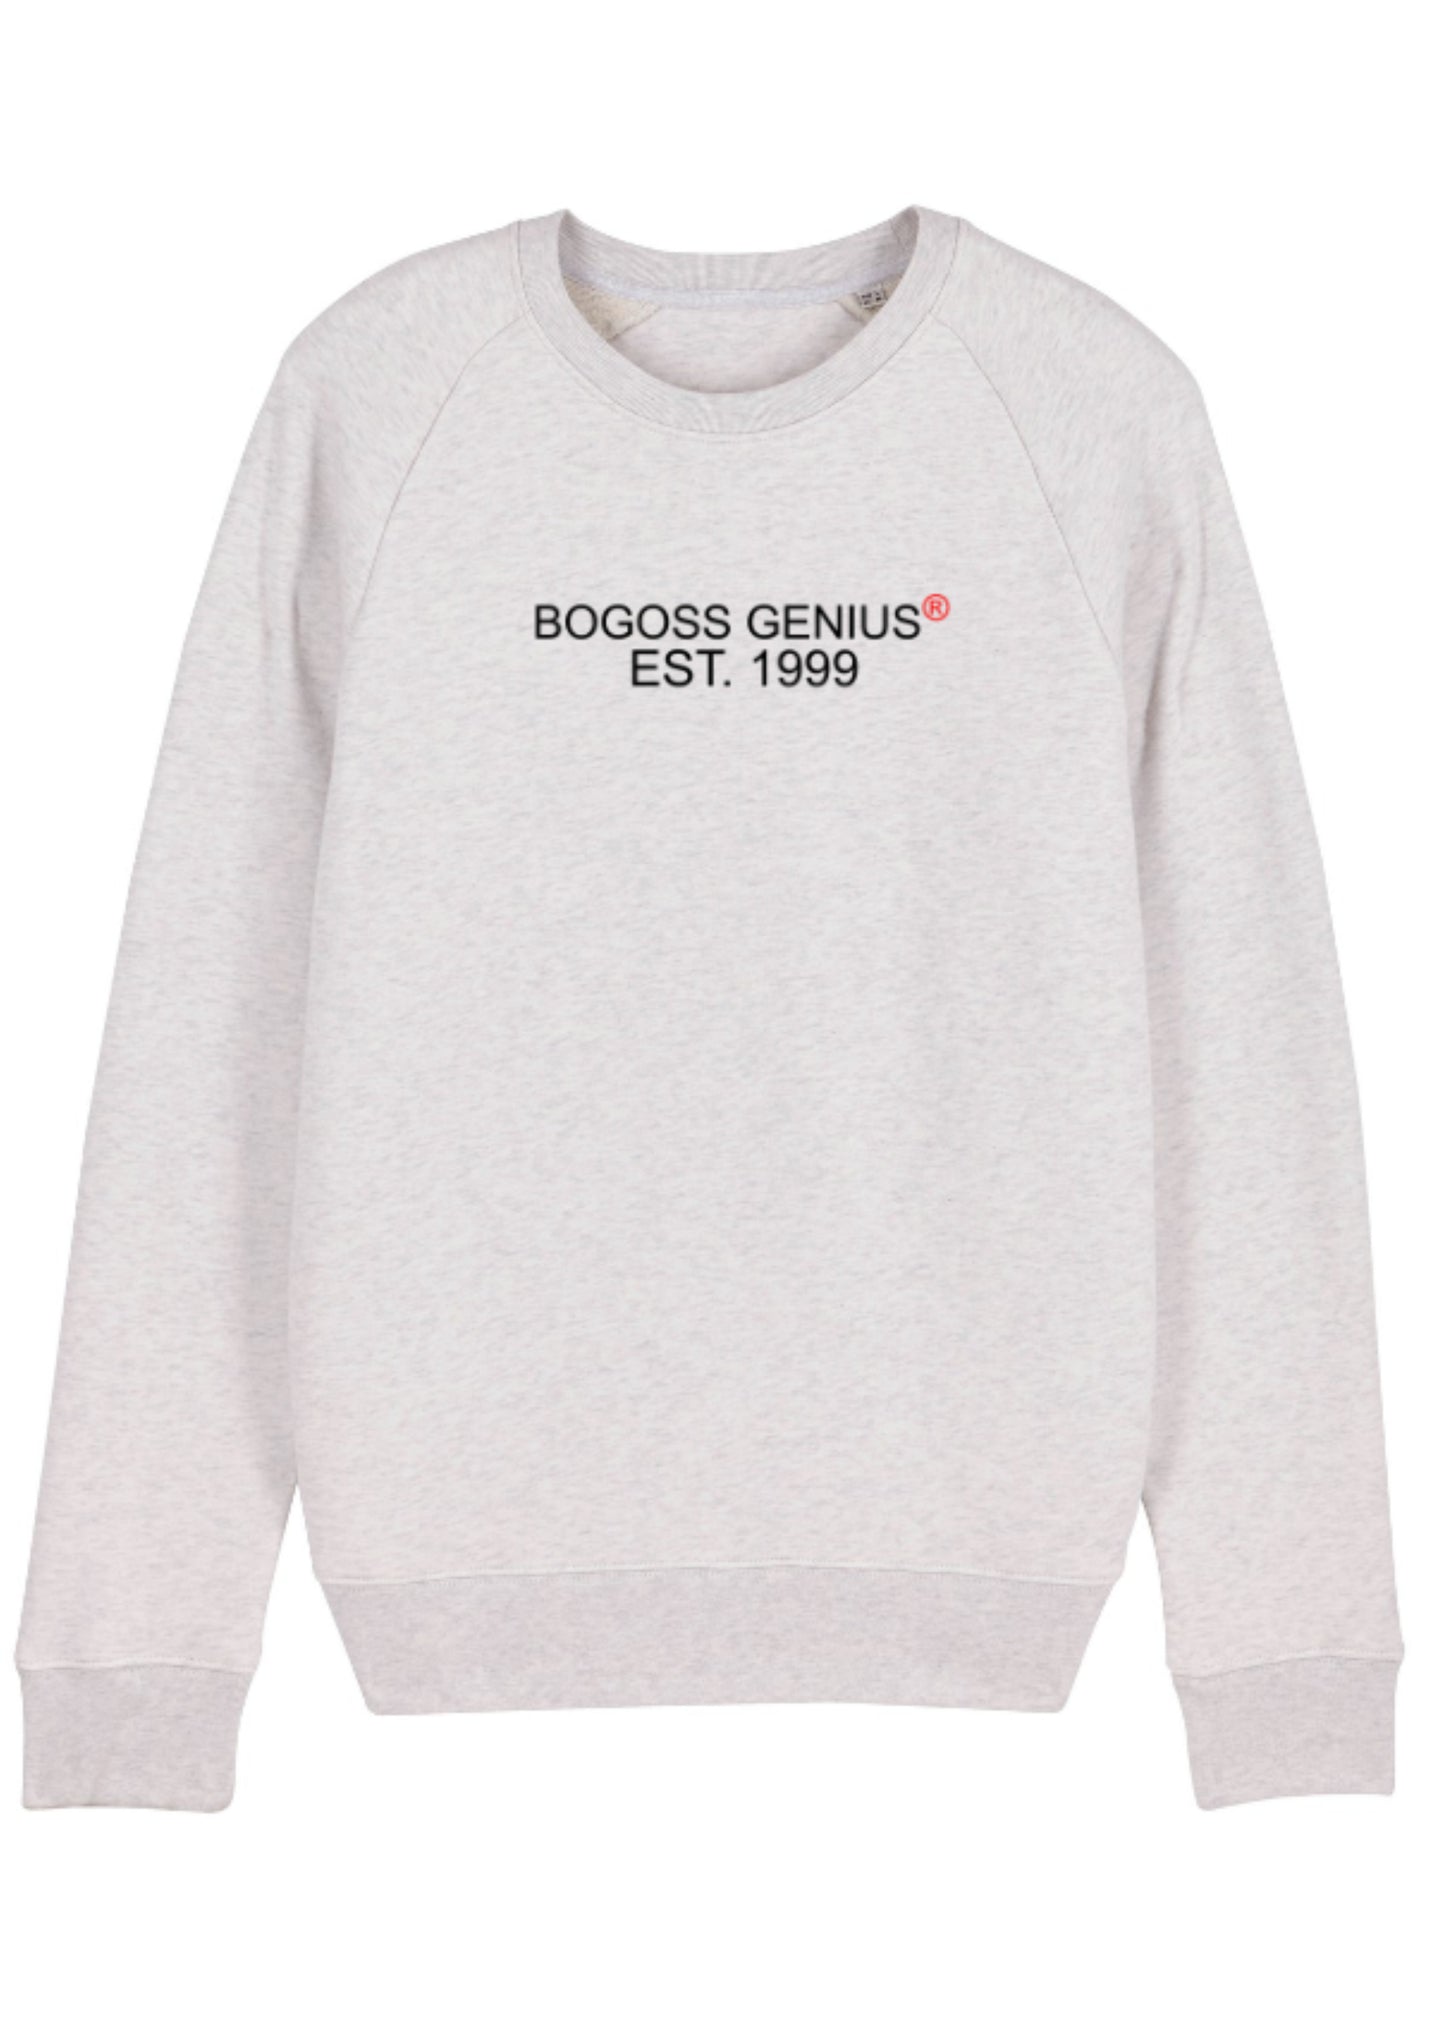 EST.1999 Bogoss Genius® sweat-shirt cream